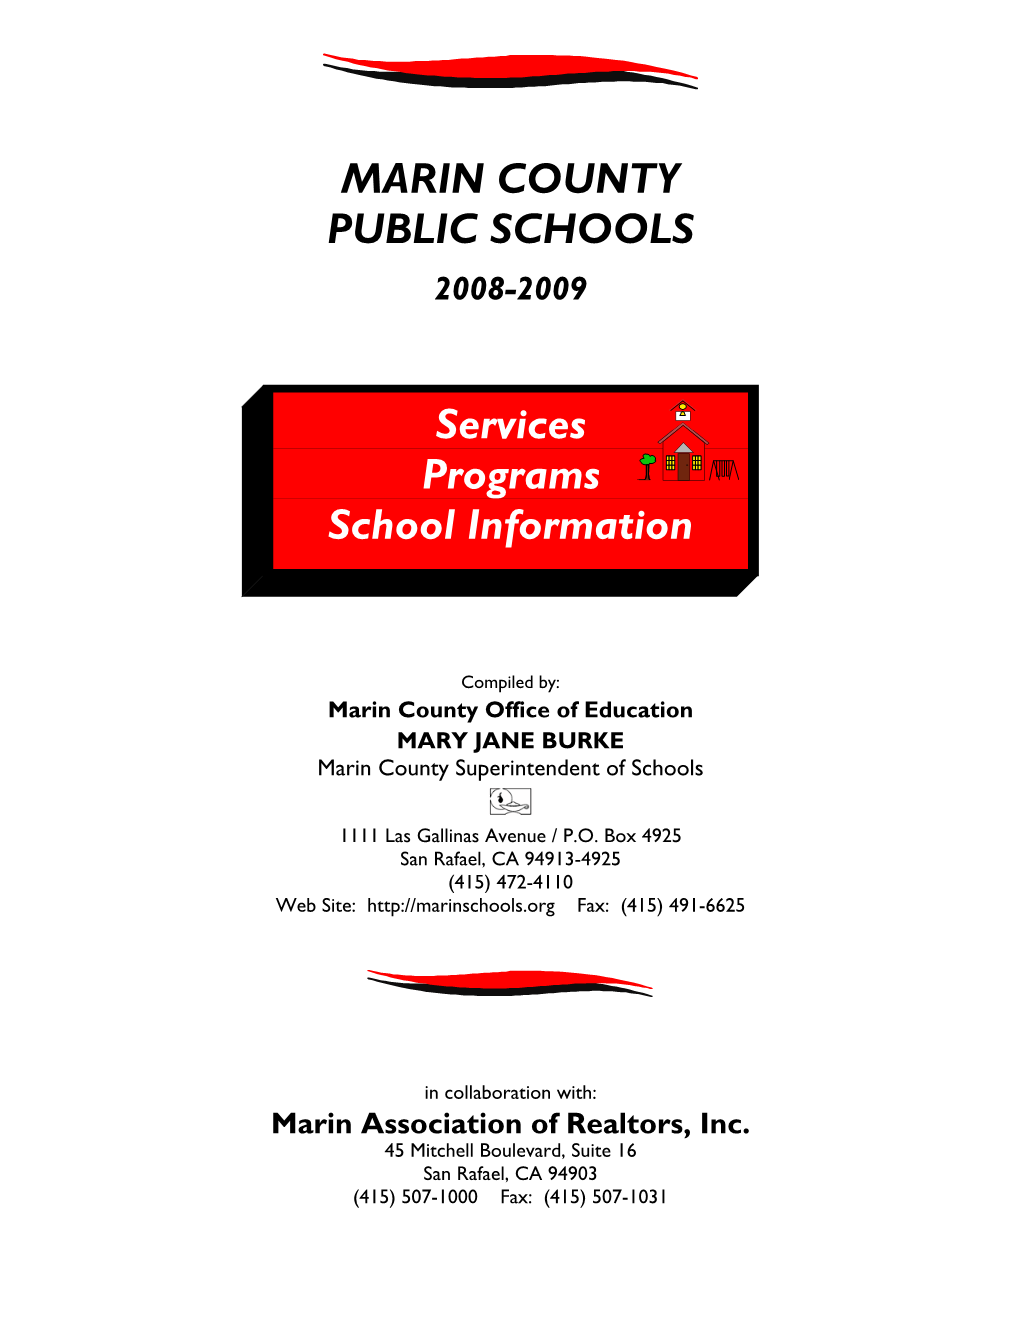 MARIN COUNTY PUBLIC SCHOOLS Services Programs School